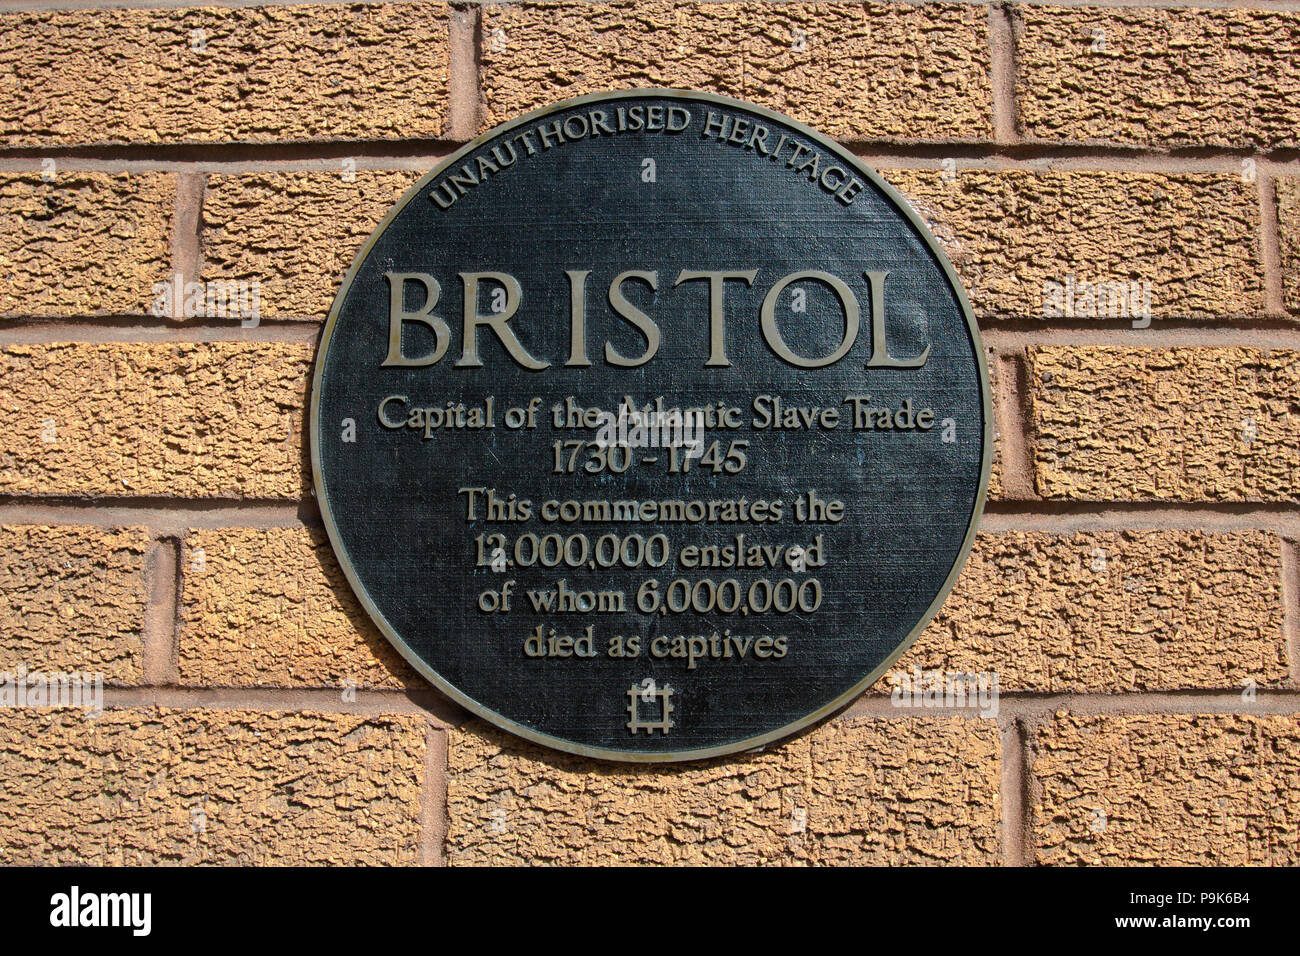 BRISTOL: Unauthorised Heritage plaque commemorating enslaved during the transatlantic atlantic slave trade. Stock Photo